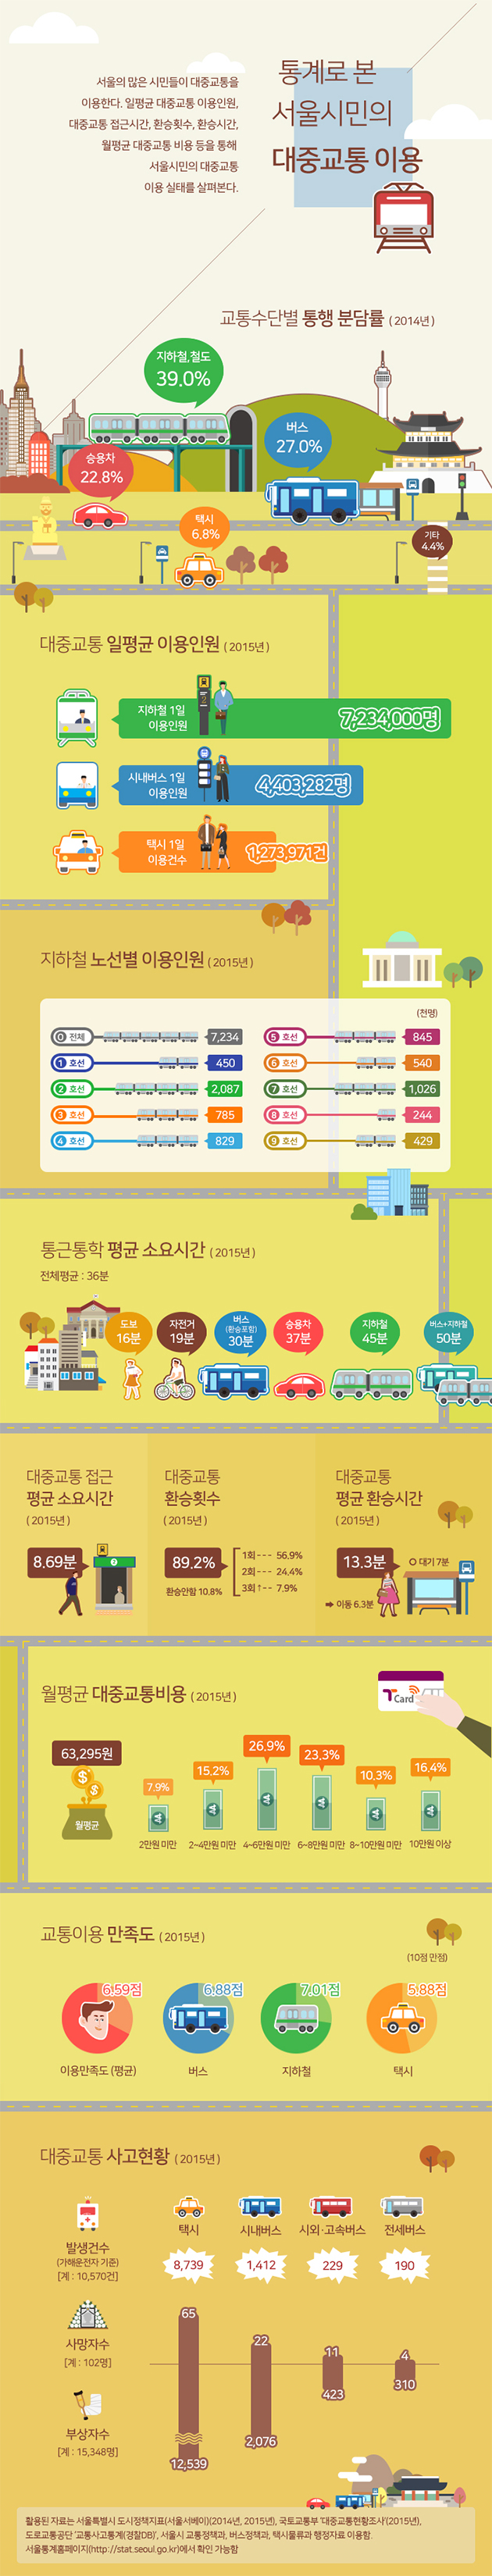 통계로 본 서울시민의 대중교통이용